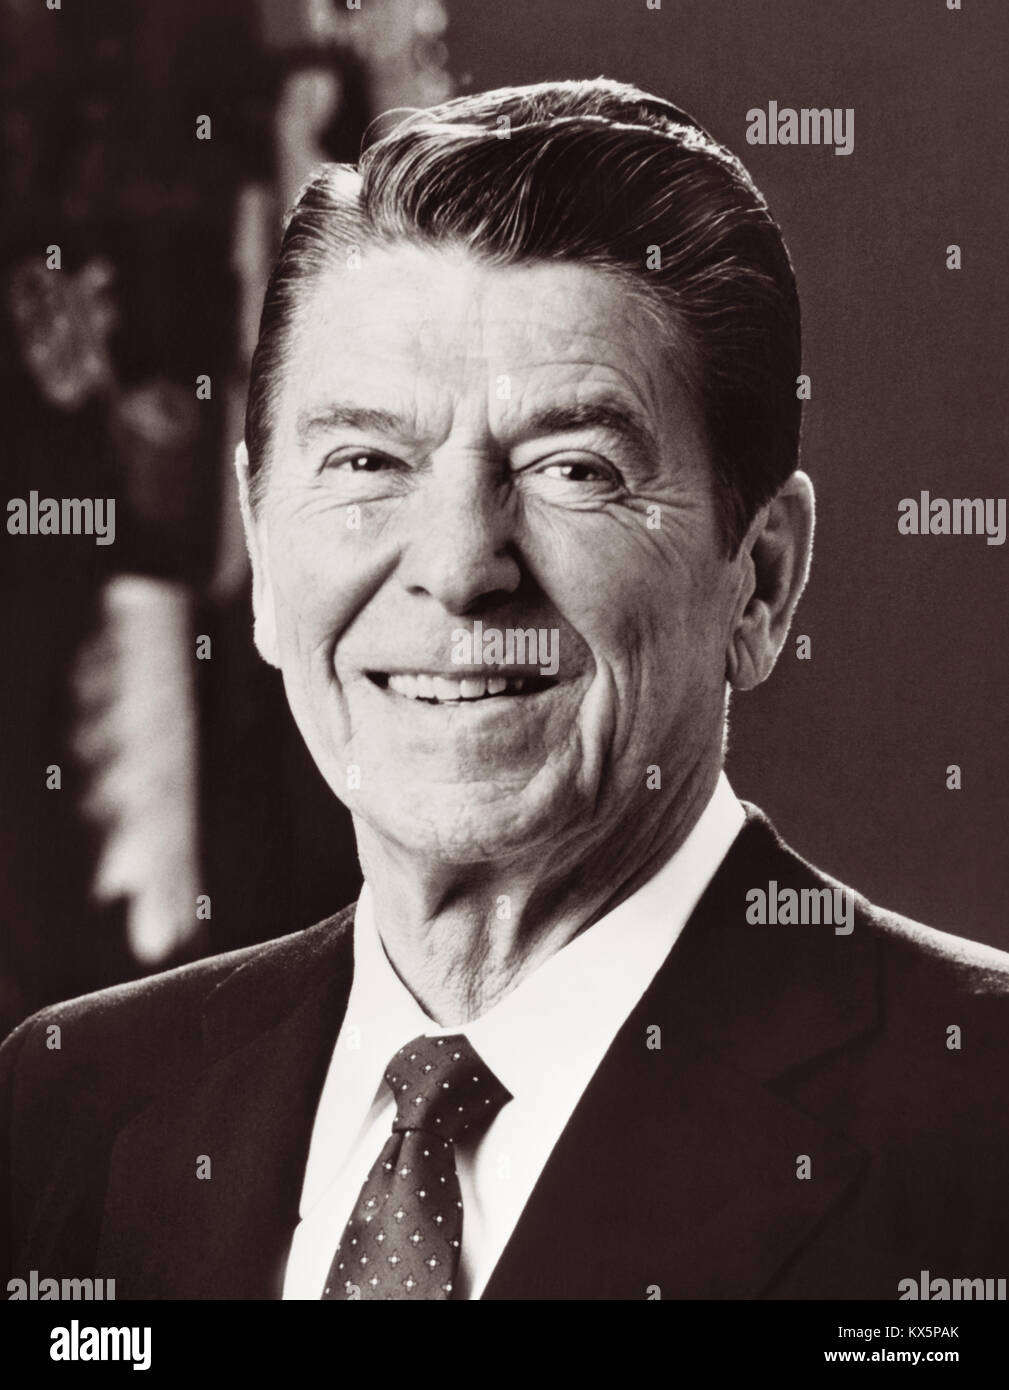 Präsident Ronald Reagan (1911-2004), 40. Präsident der Vereinigten Staaten. Stockfoto